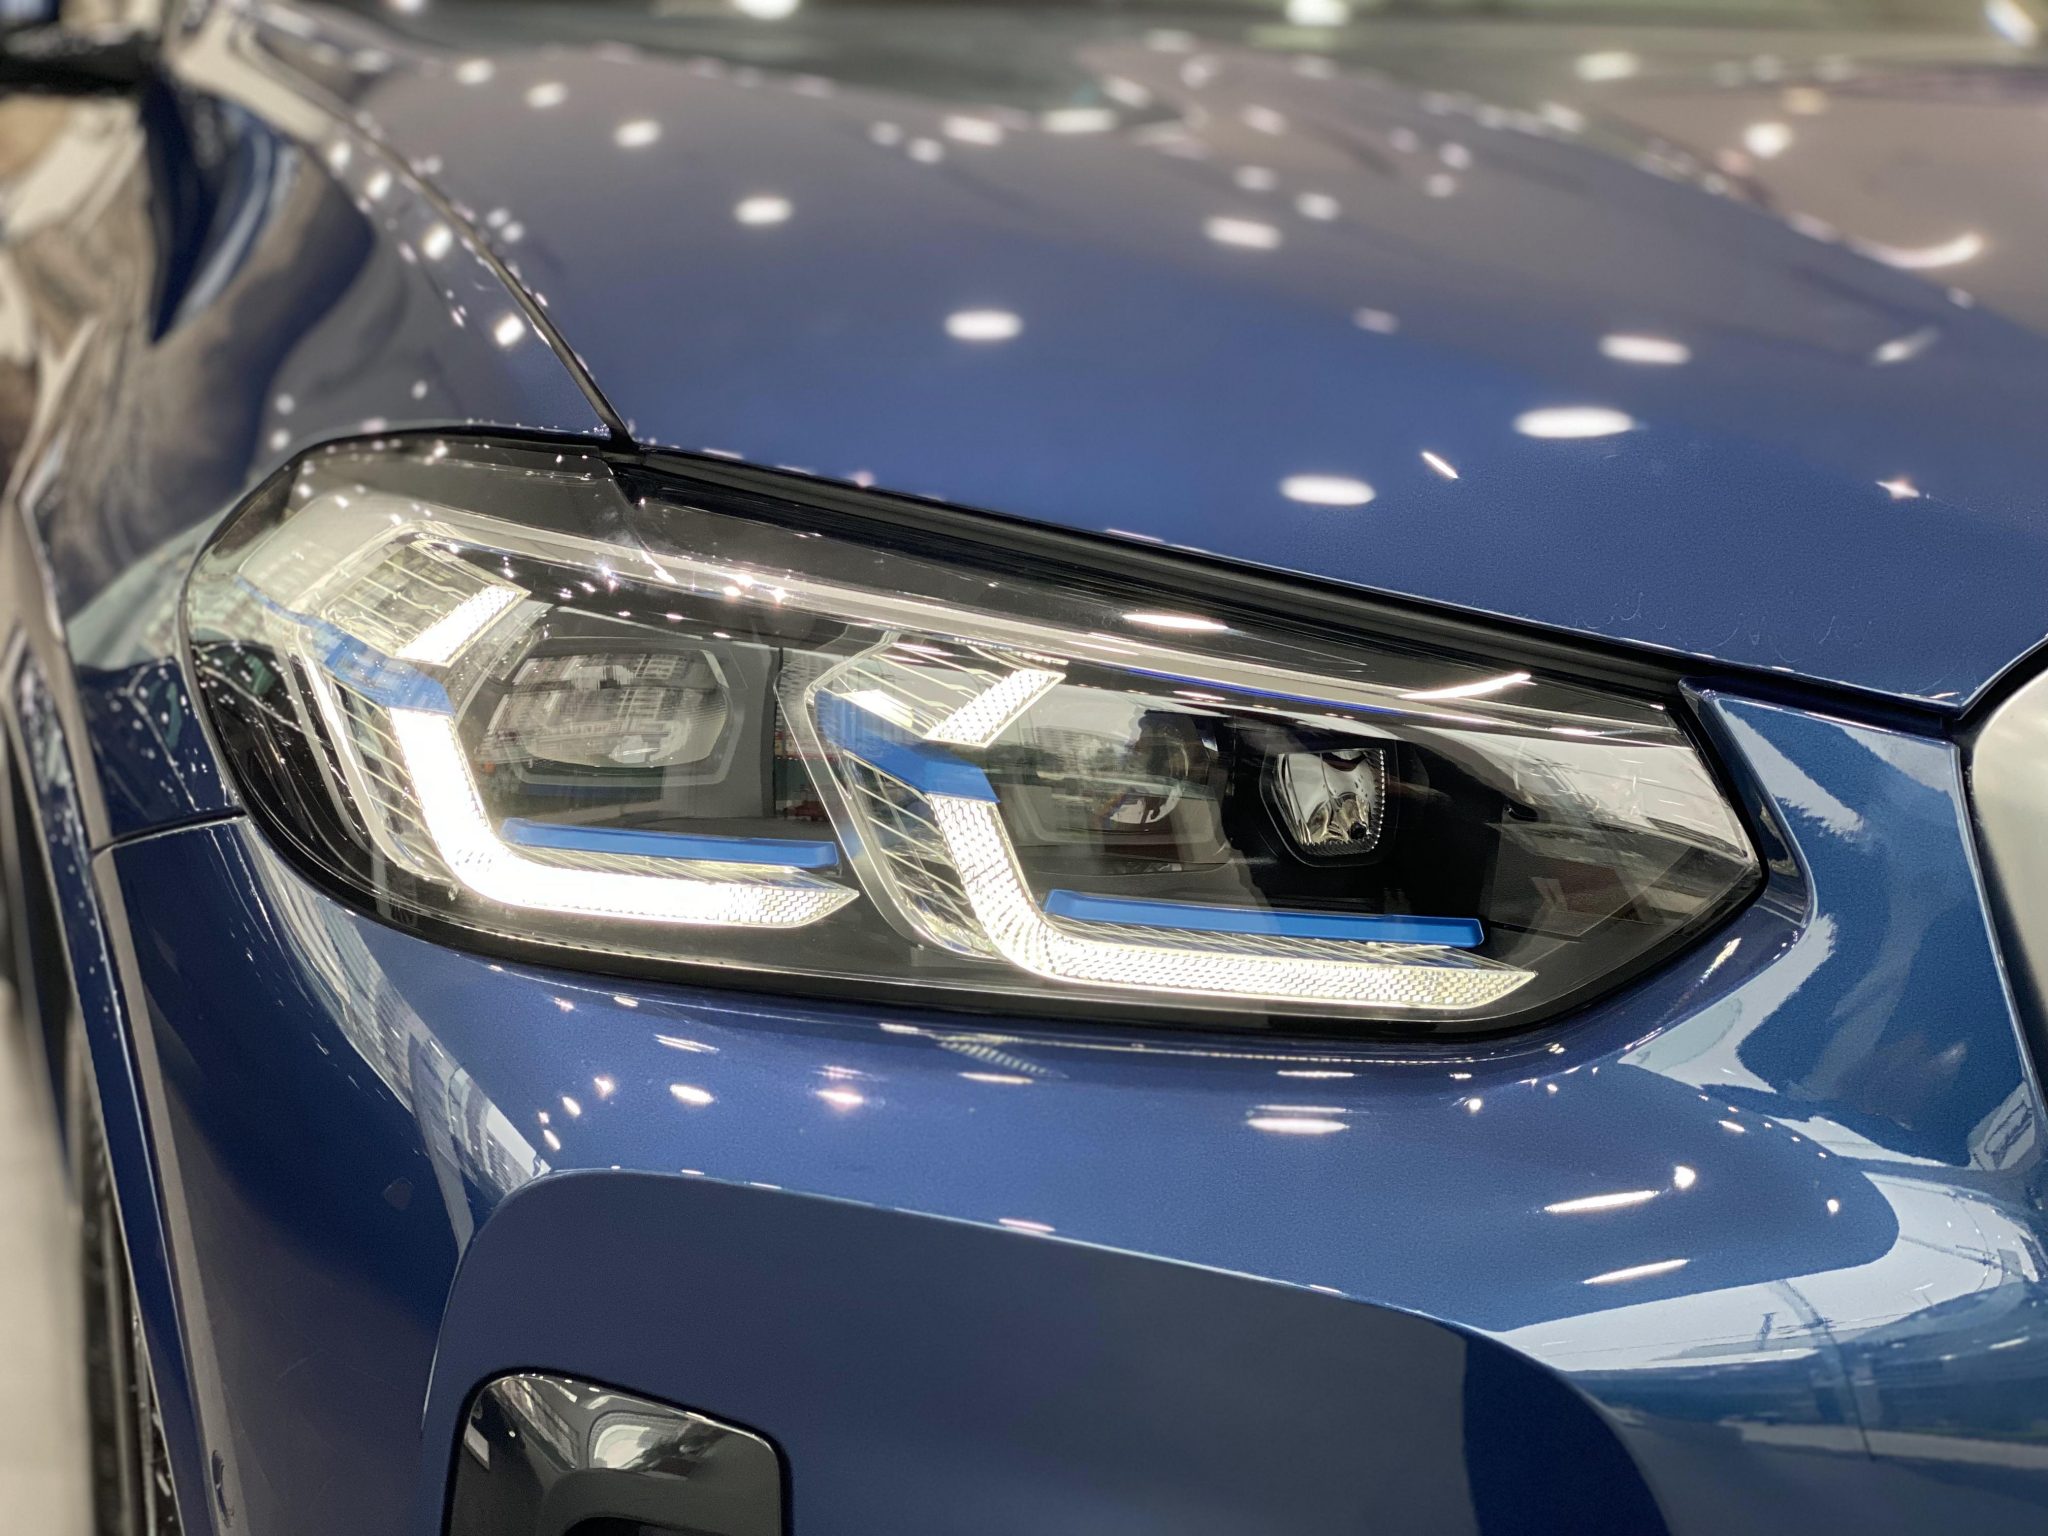 Tải ảnh BMW X4 đẹp miễn phí chất lượng cao 30